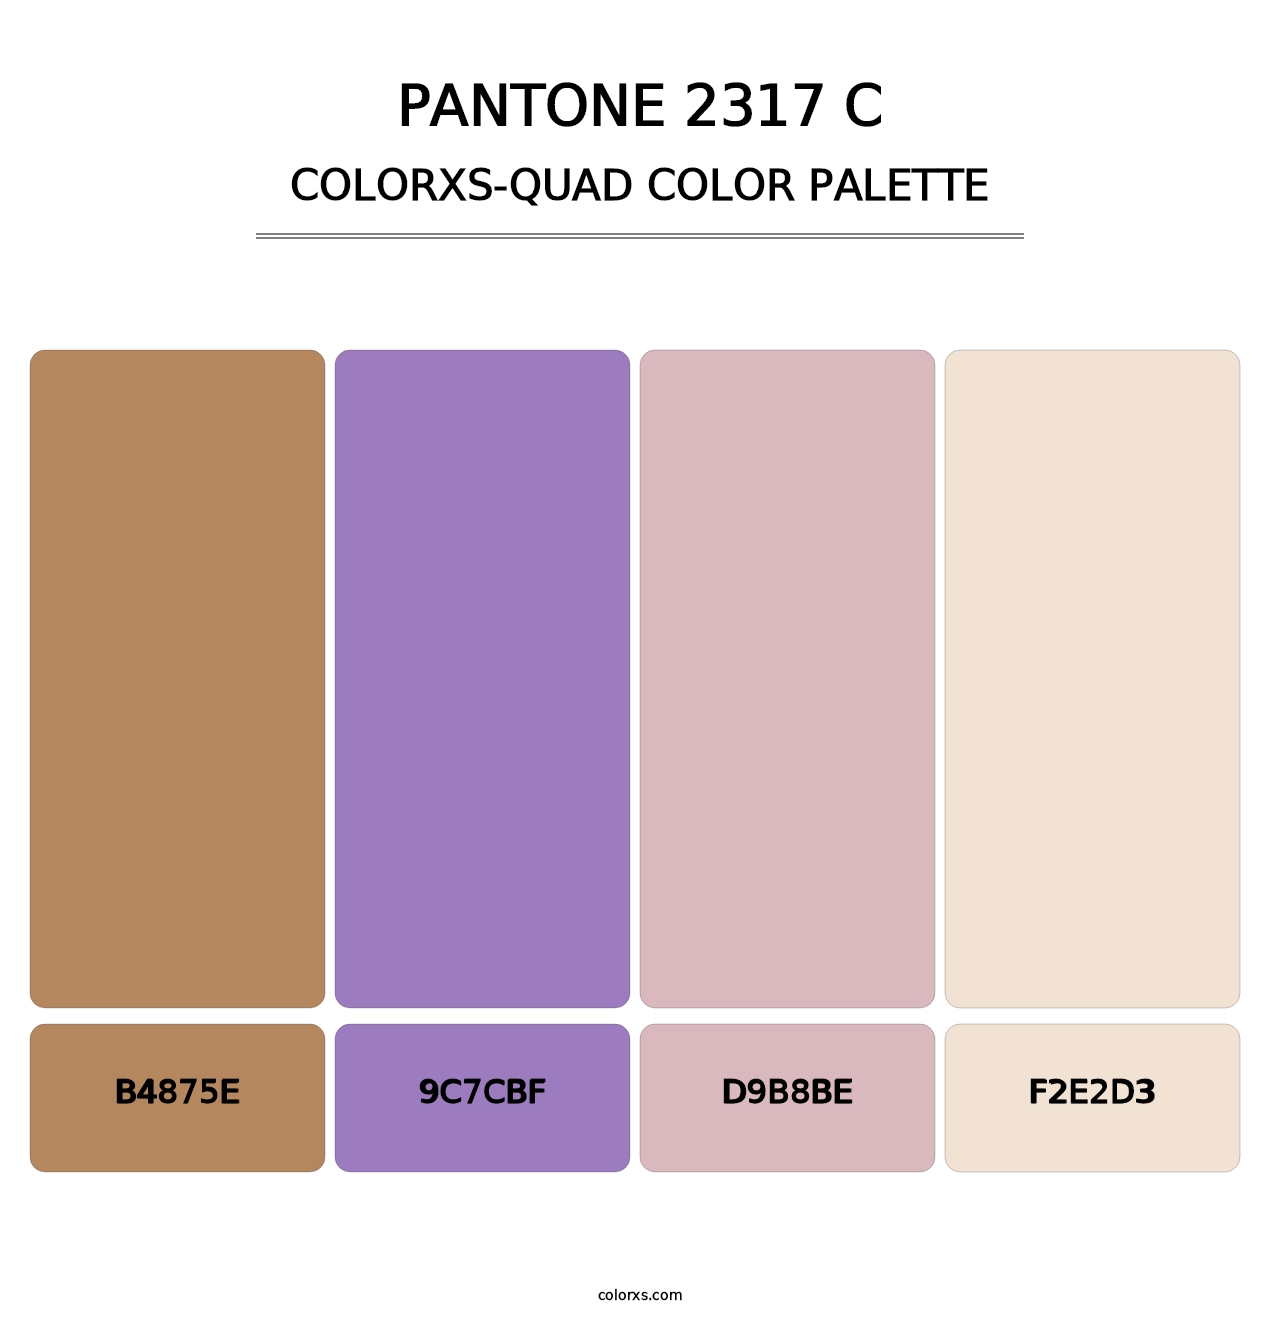 PANTONE 2317 C - Colorxs Quad Palette